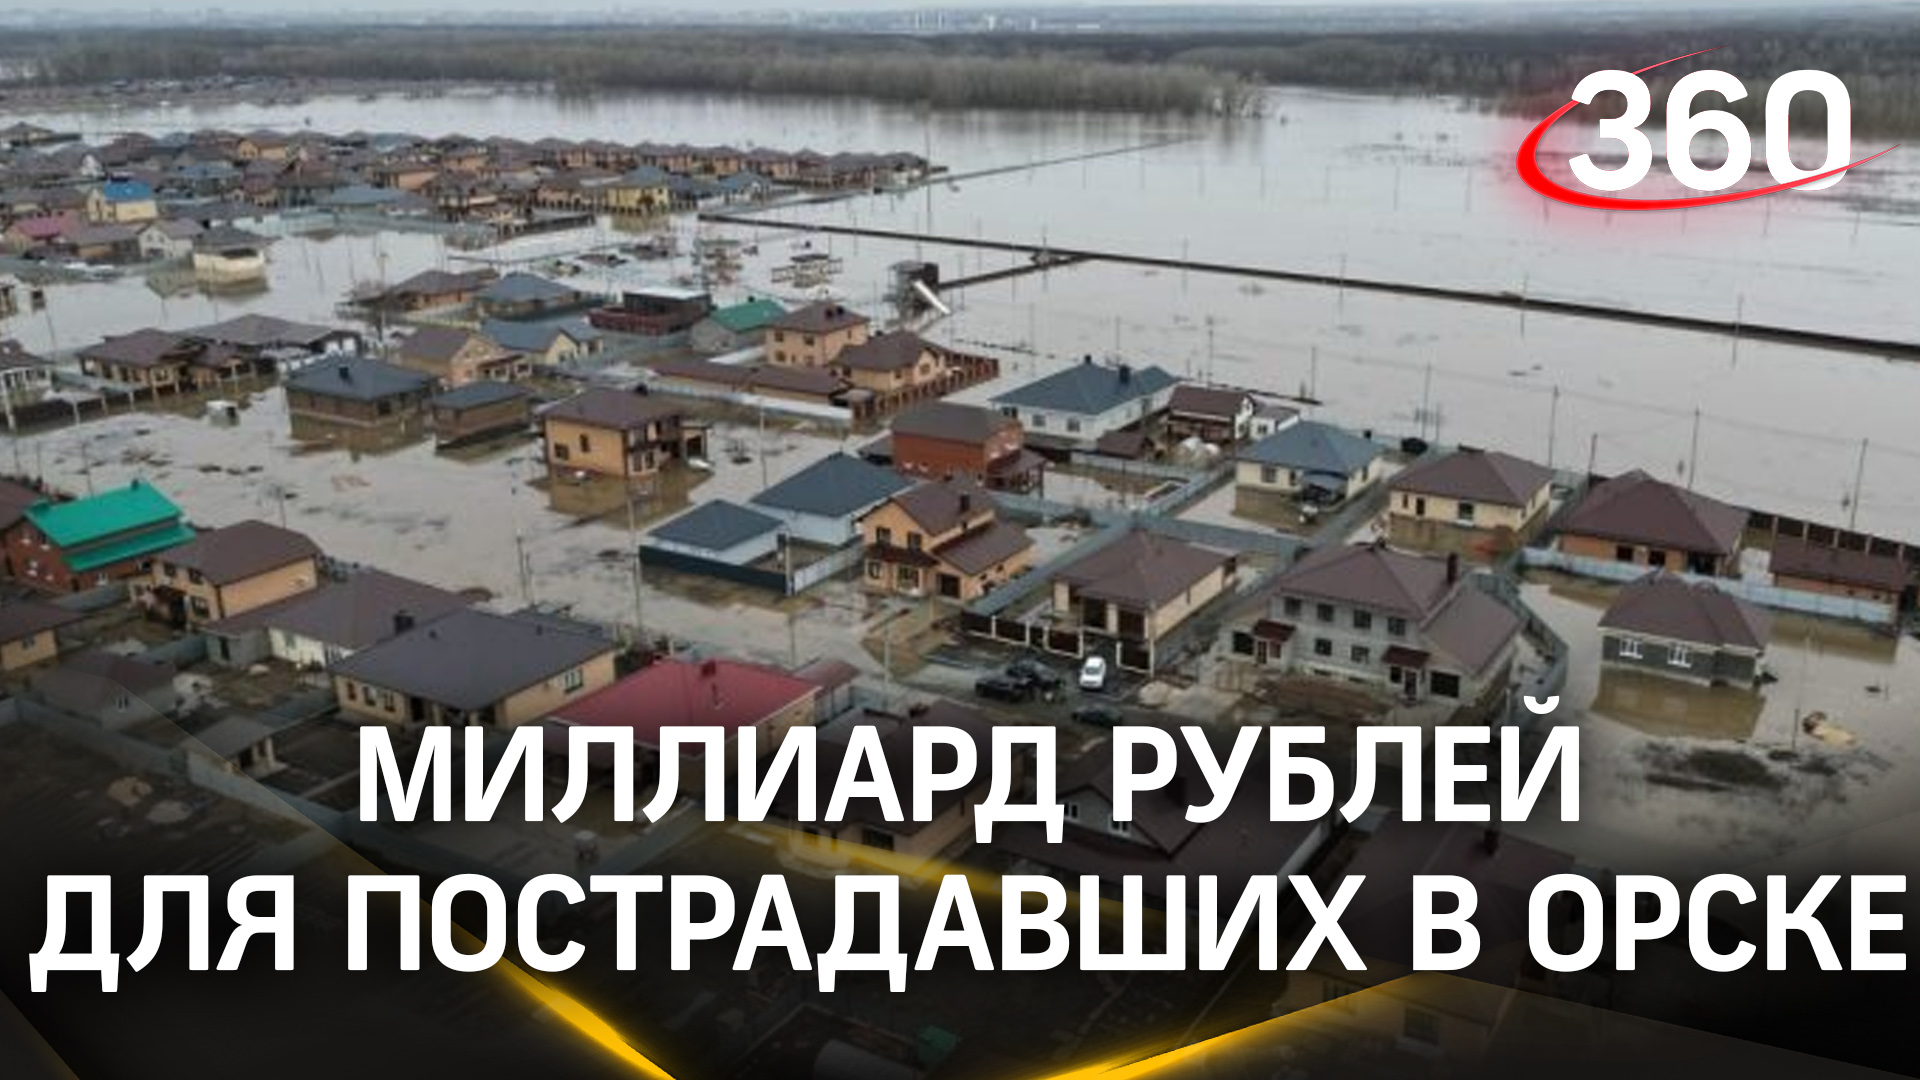 Уже миллиард рублей: заявления на выплаты пострадавшим от паводка в Оренбурге продолжают поступать